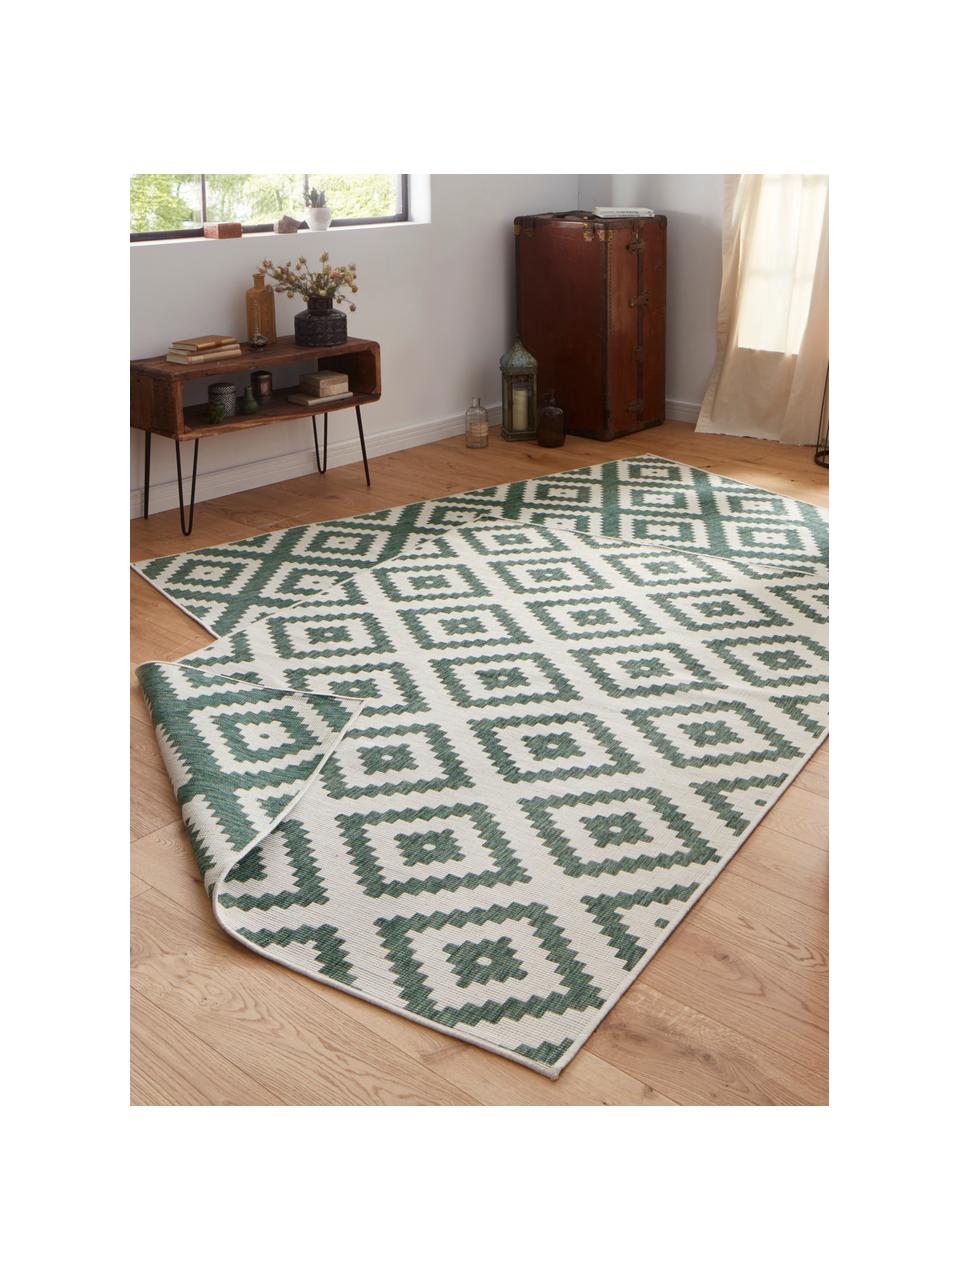 Interiérový a exteriérový oboustranný koberec Malta, 100 % polypropylen, Tlumeně bílá, tmavě zelená, Š 200 cm, D 290 cm (velikost L)